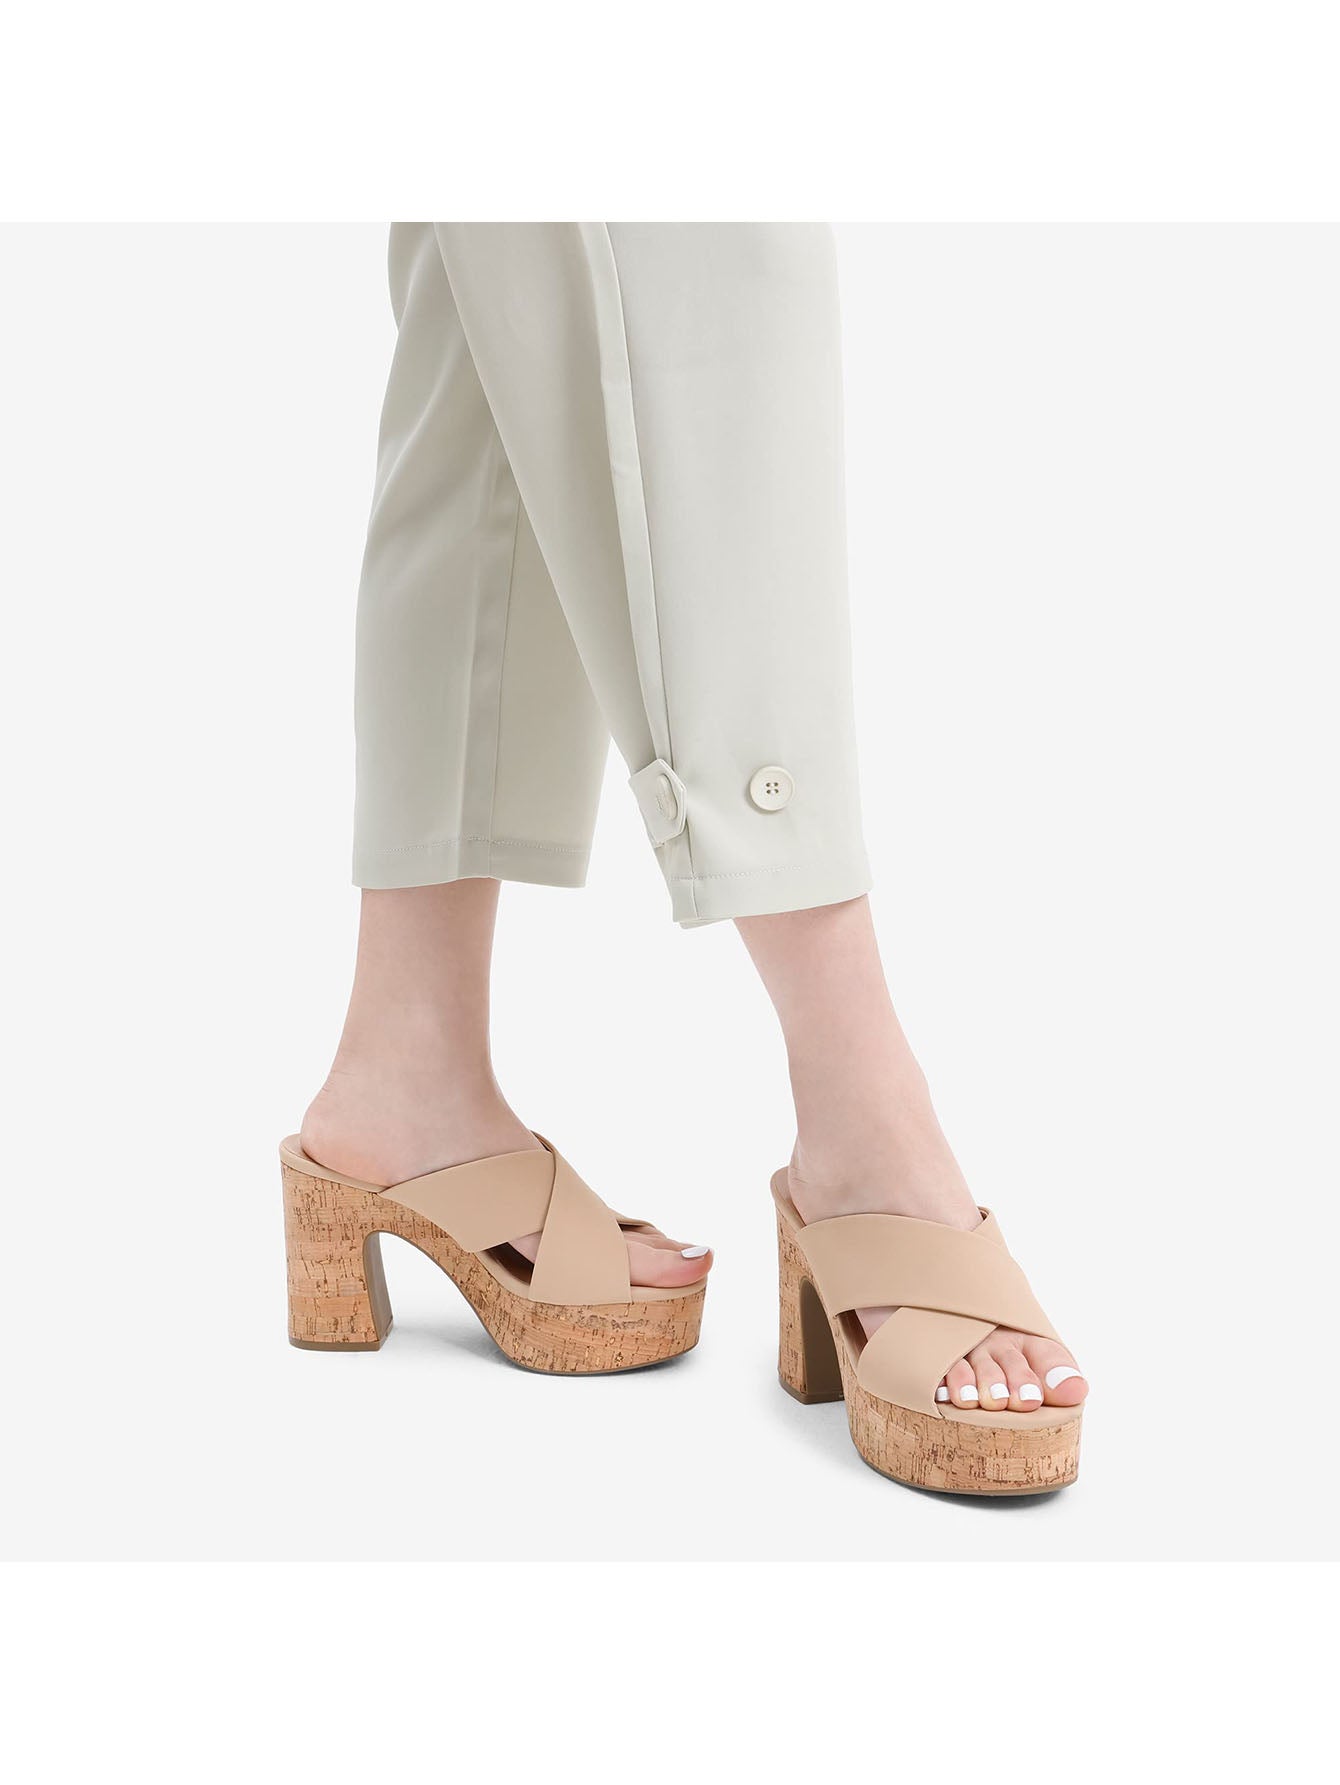 Women's Platform Wedge Sandals: Chic Open Toe Slip-On Heels